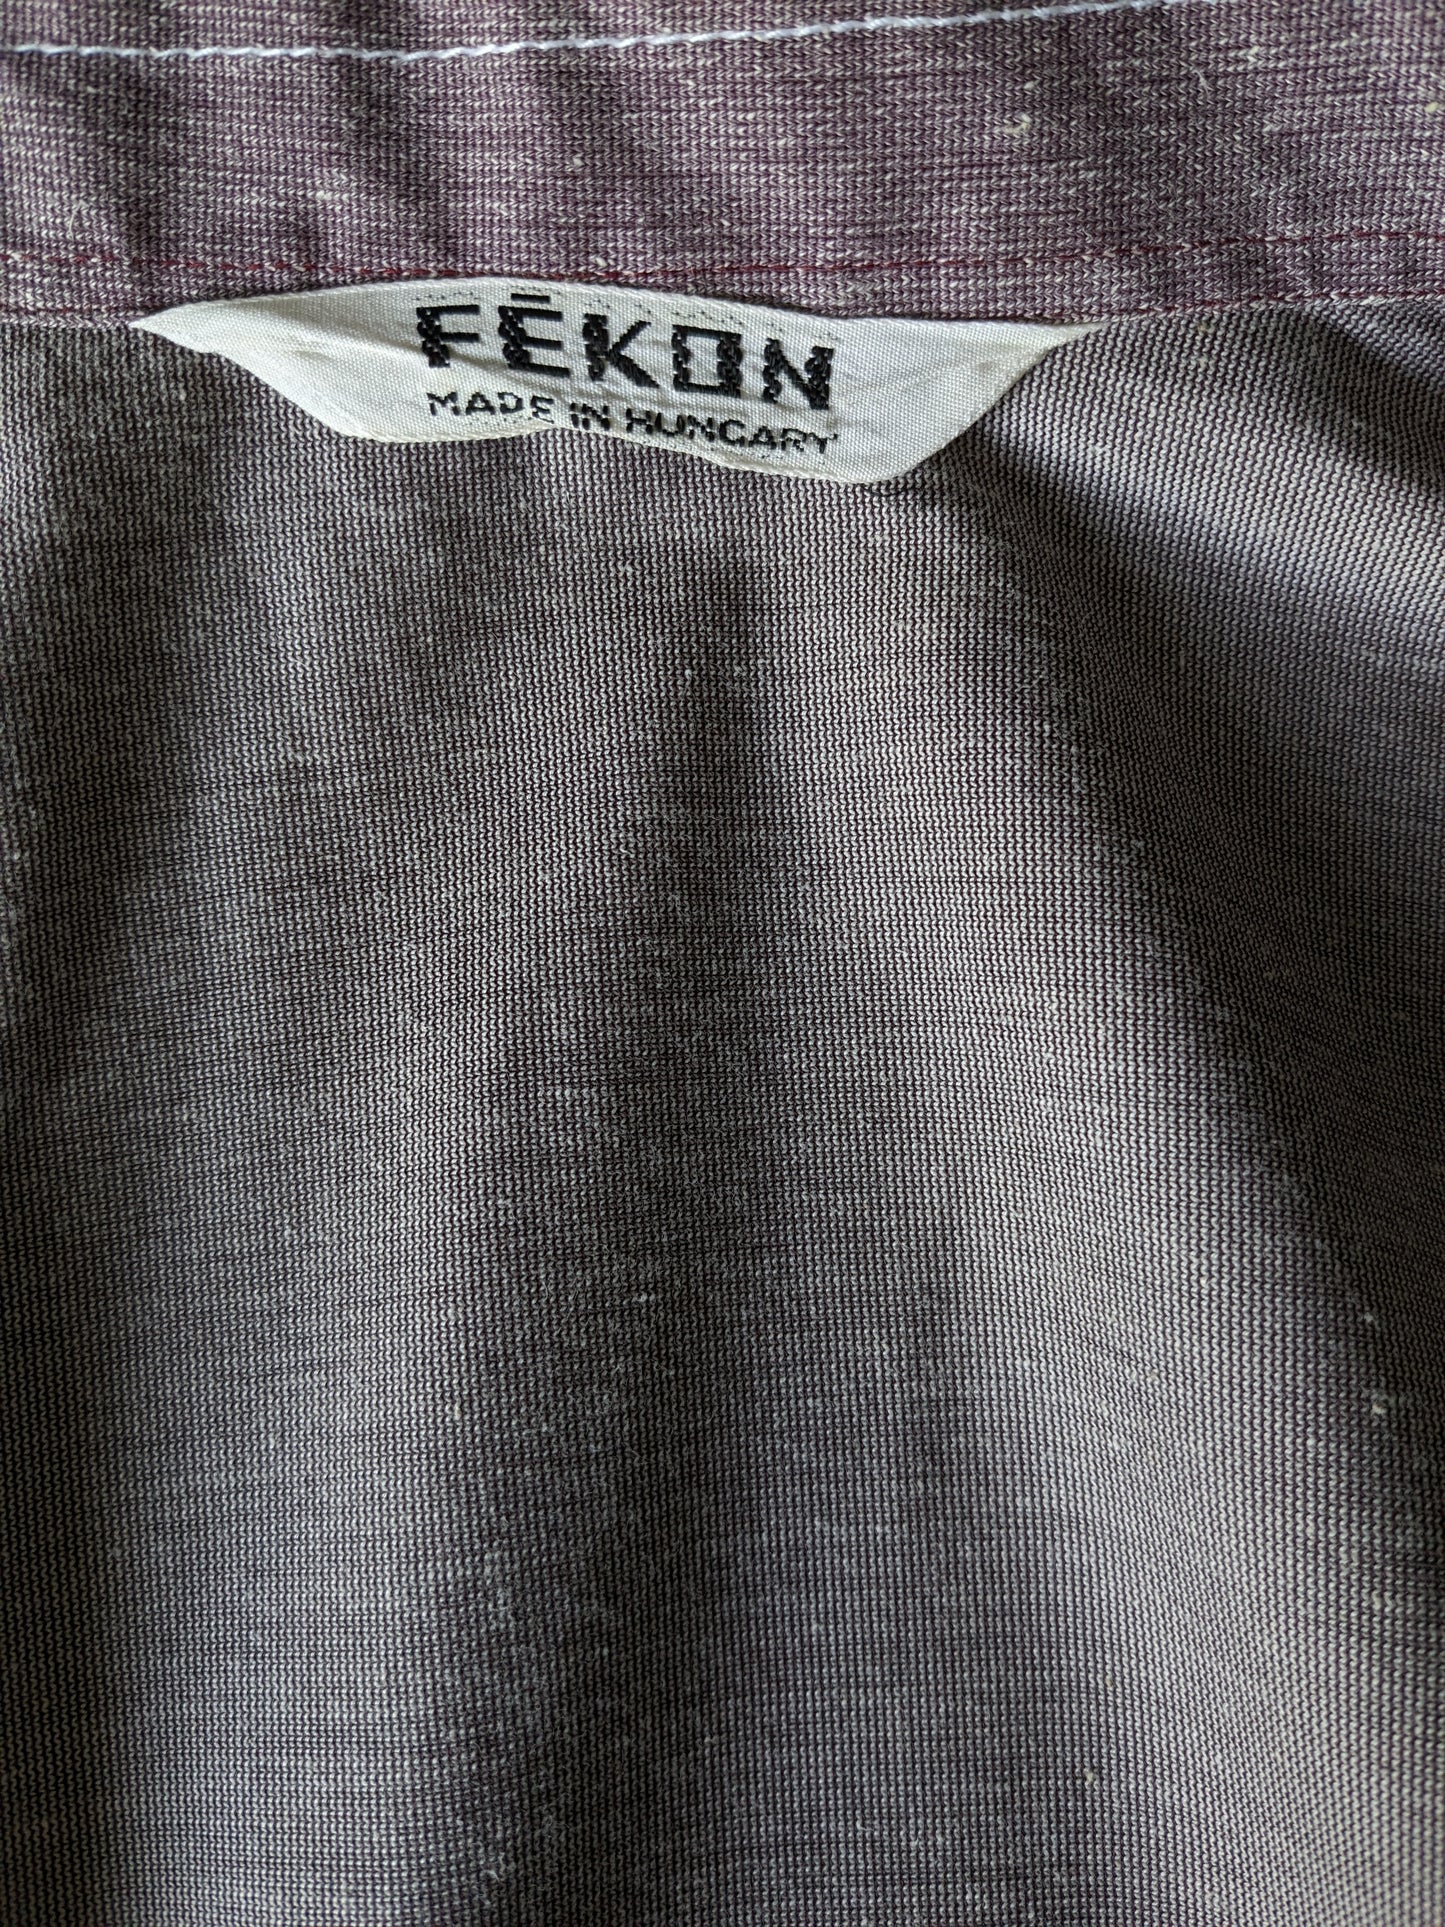 Vintage Fekon -Shirt Kurzarm mit einem Punktkragen und drücken Stollen. Lila weiß gemischt. Größe M.